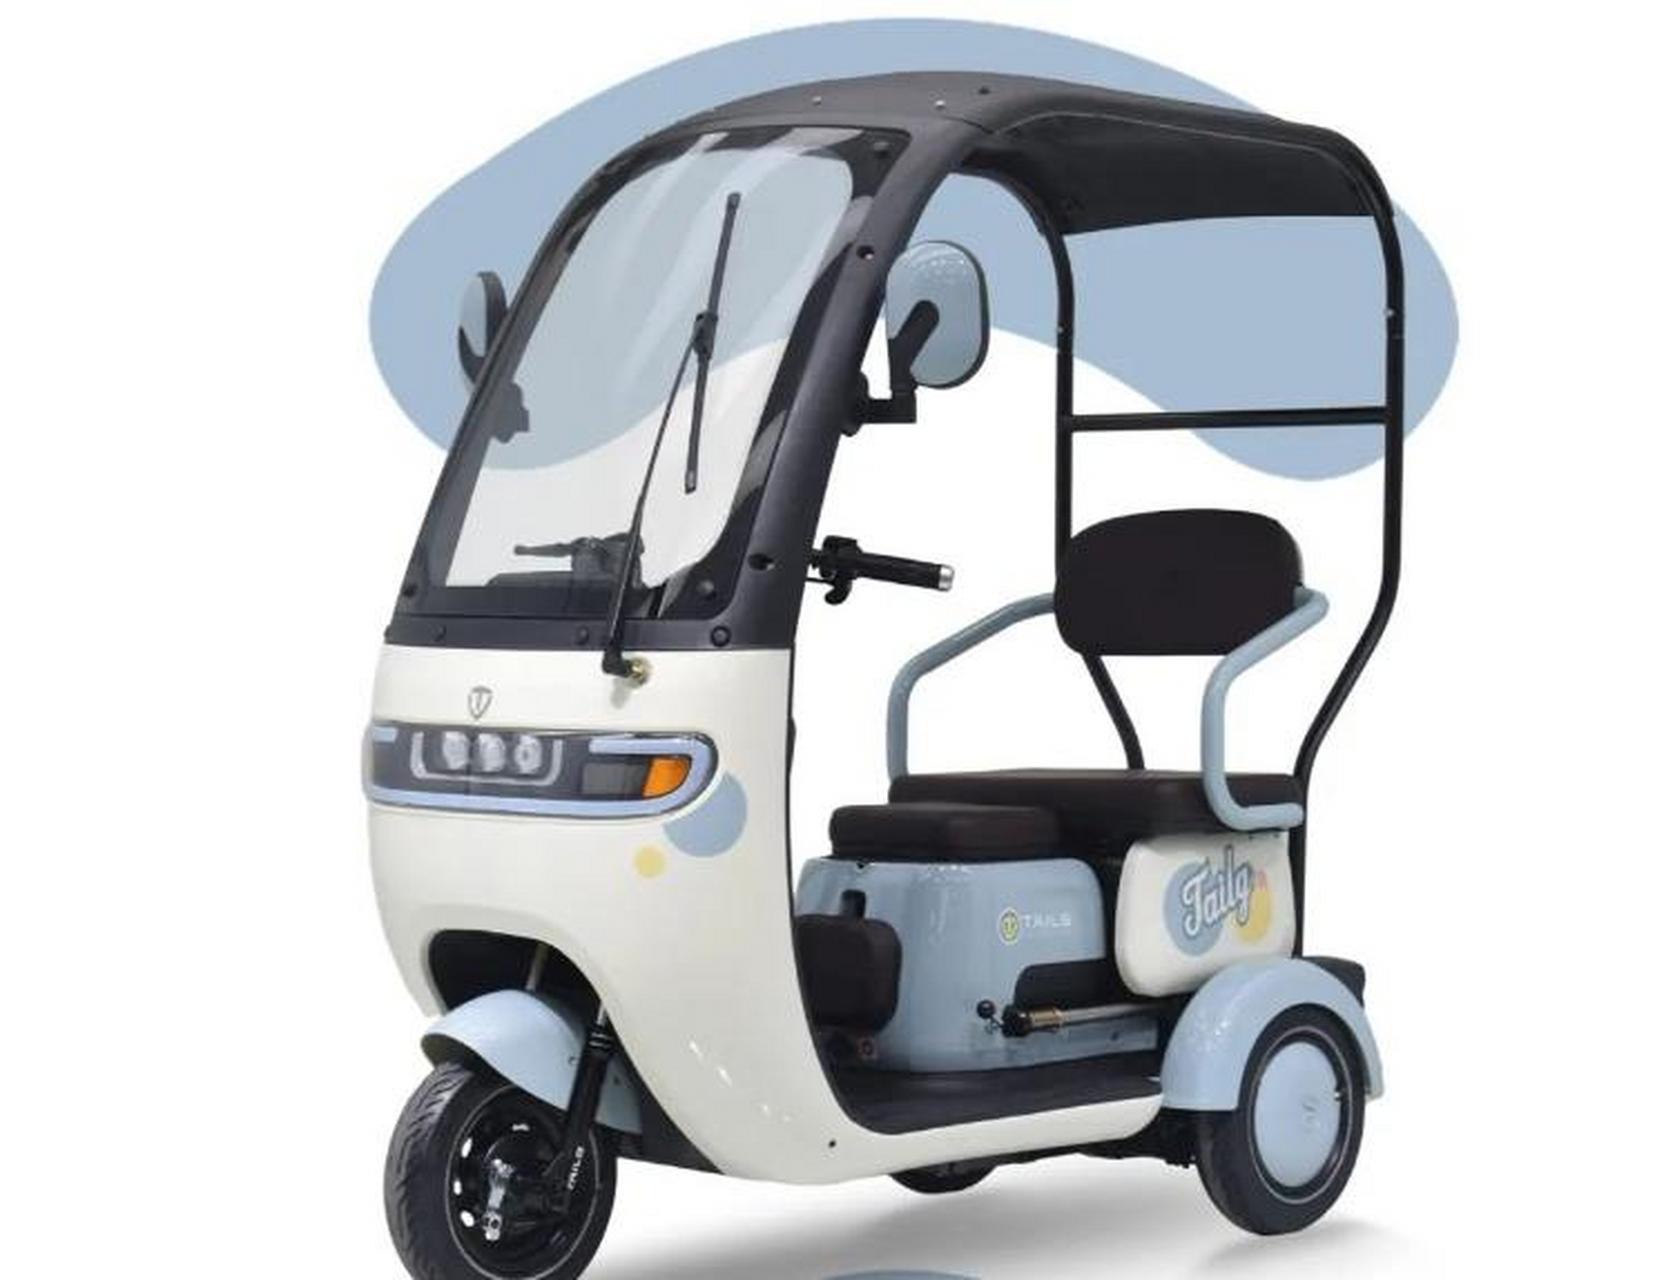 台铃发布第2代休闲电动三轮车,标配雨篷,多种骑行模式,防溜坡 台铃 x4